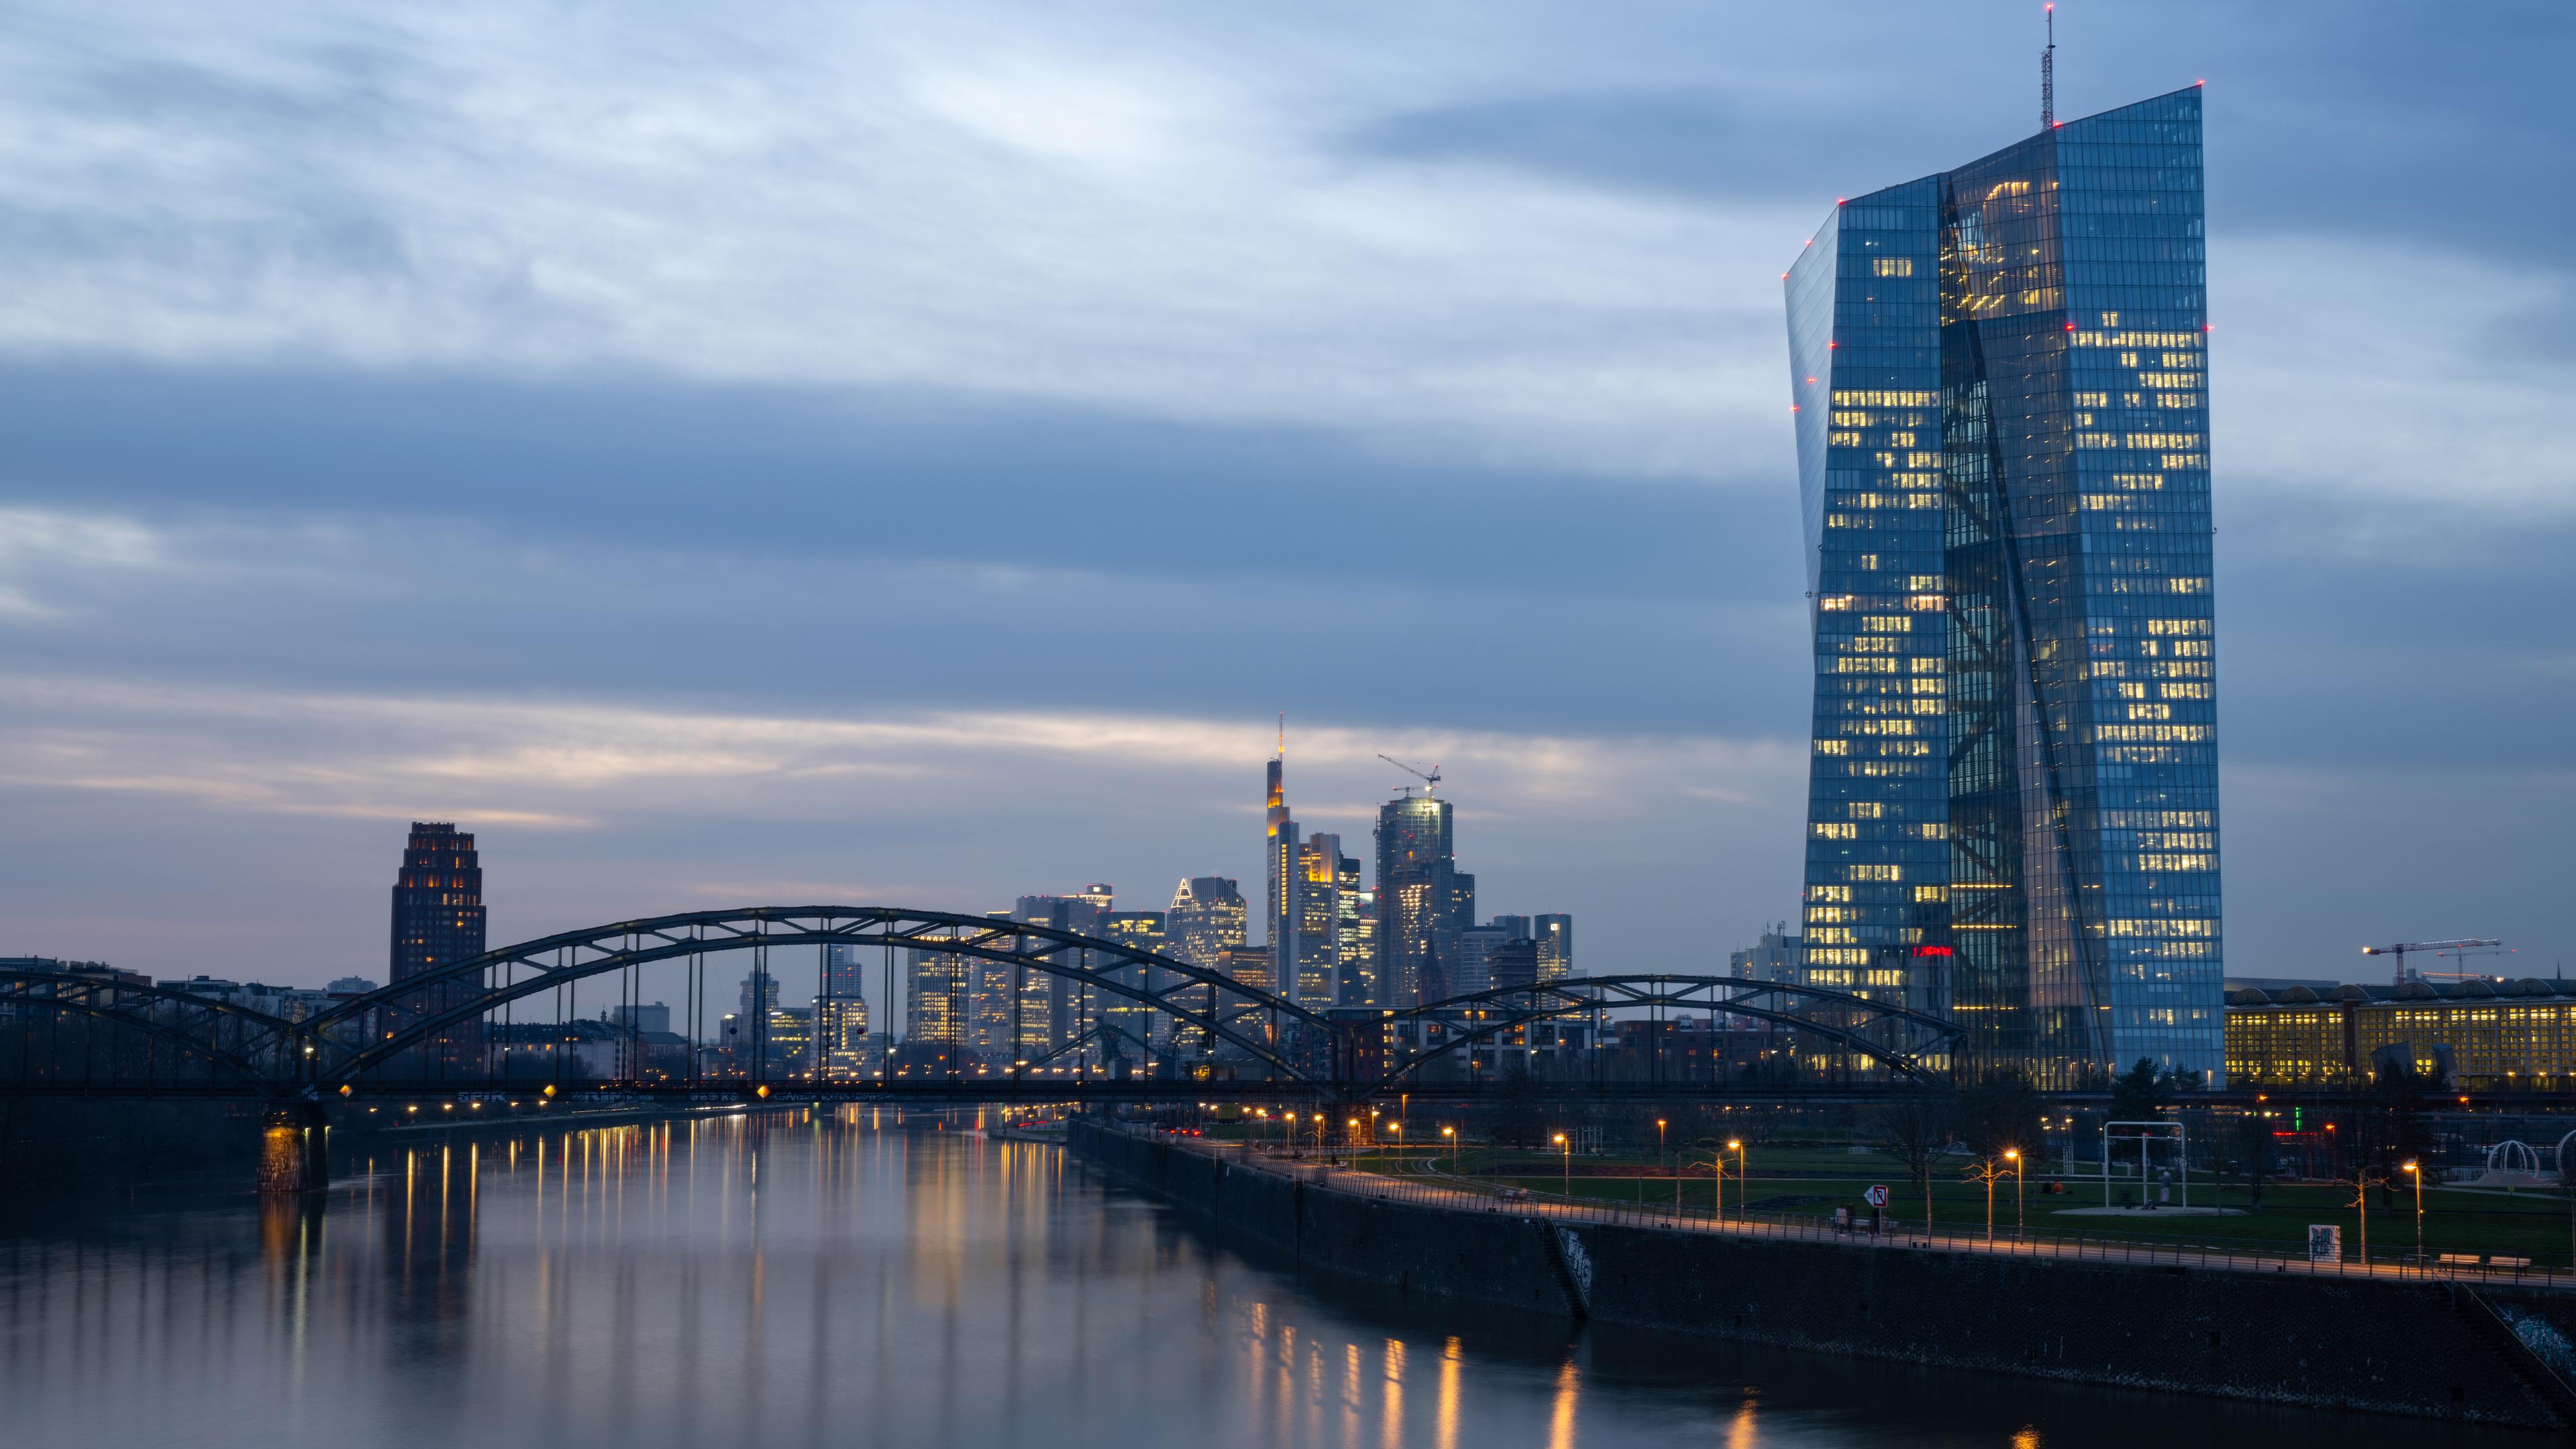 Typical: Europäische Zentralbank in Frankfurt